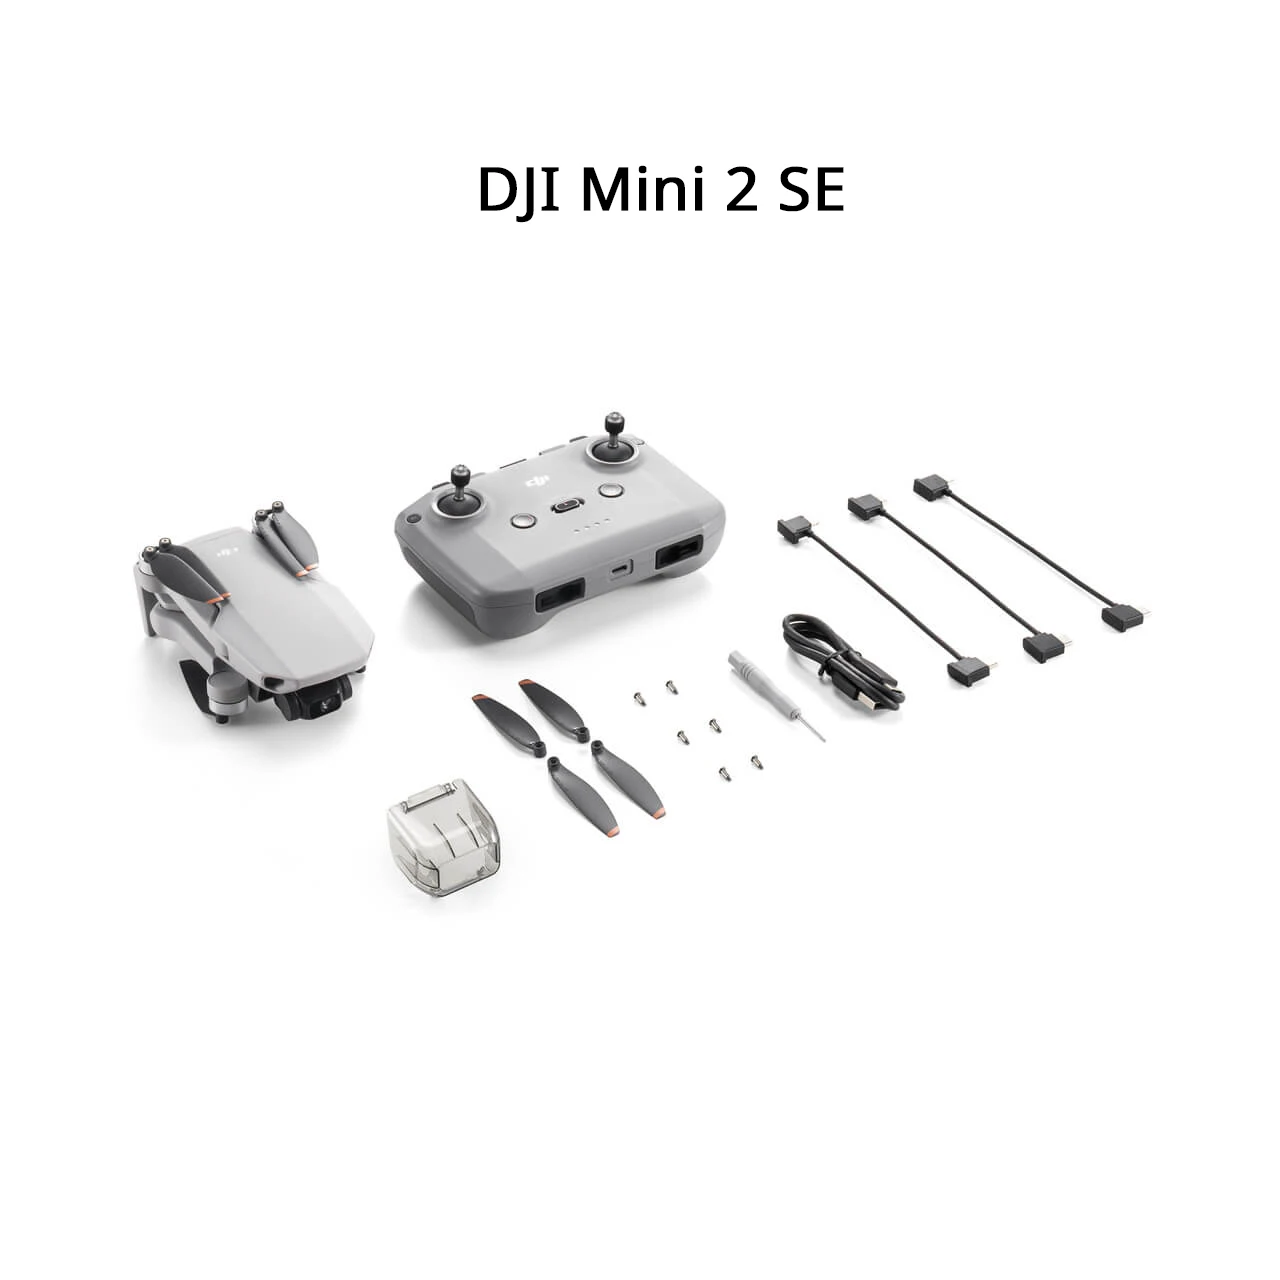 DJI Mini 2 SE / mini 2 fly more combo Drone 2.7K/30fps Video 10km Video  Transmission original brand new in stock